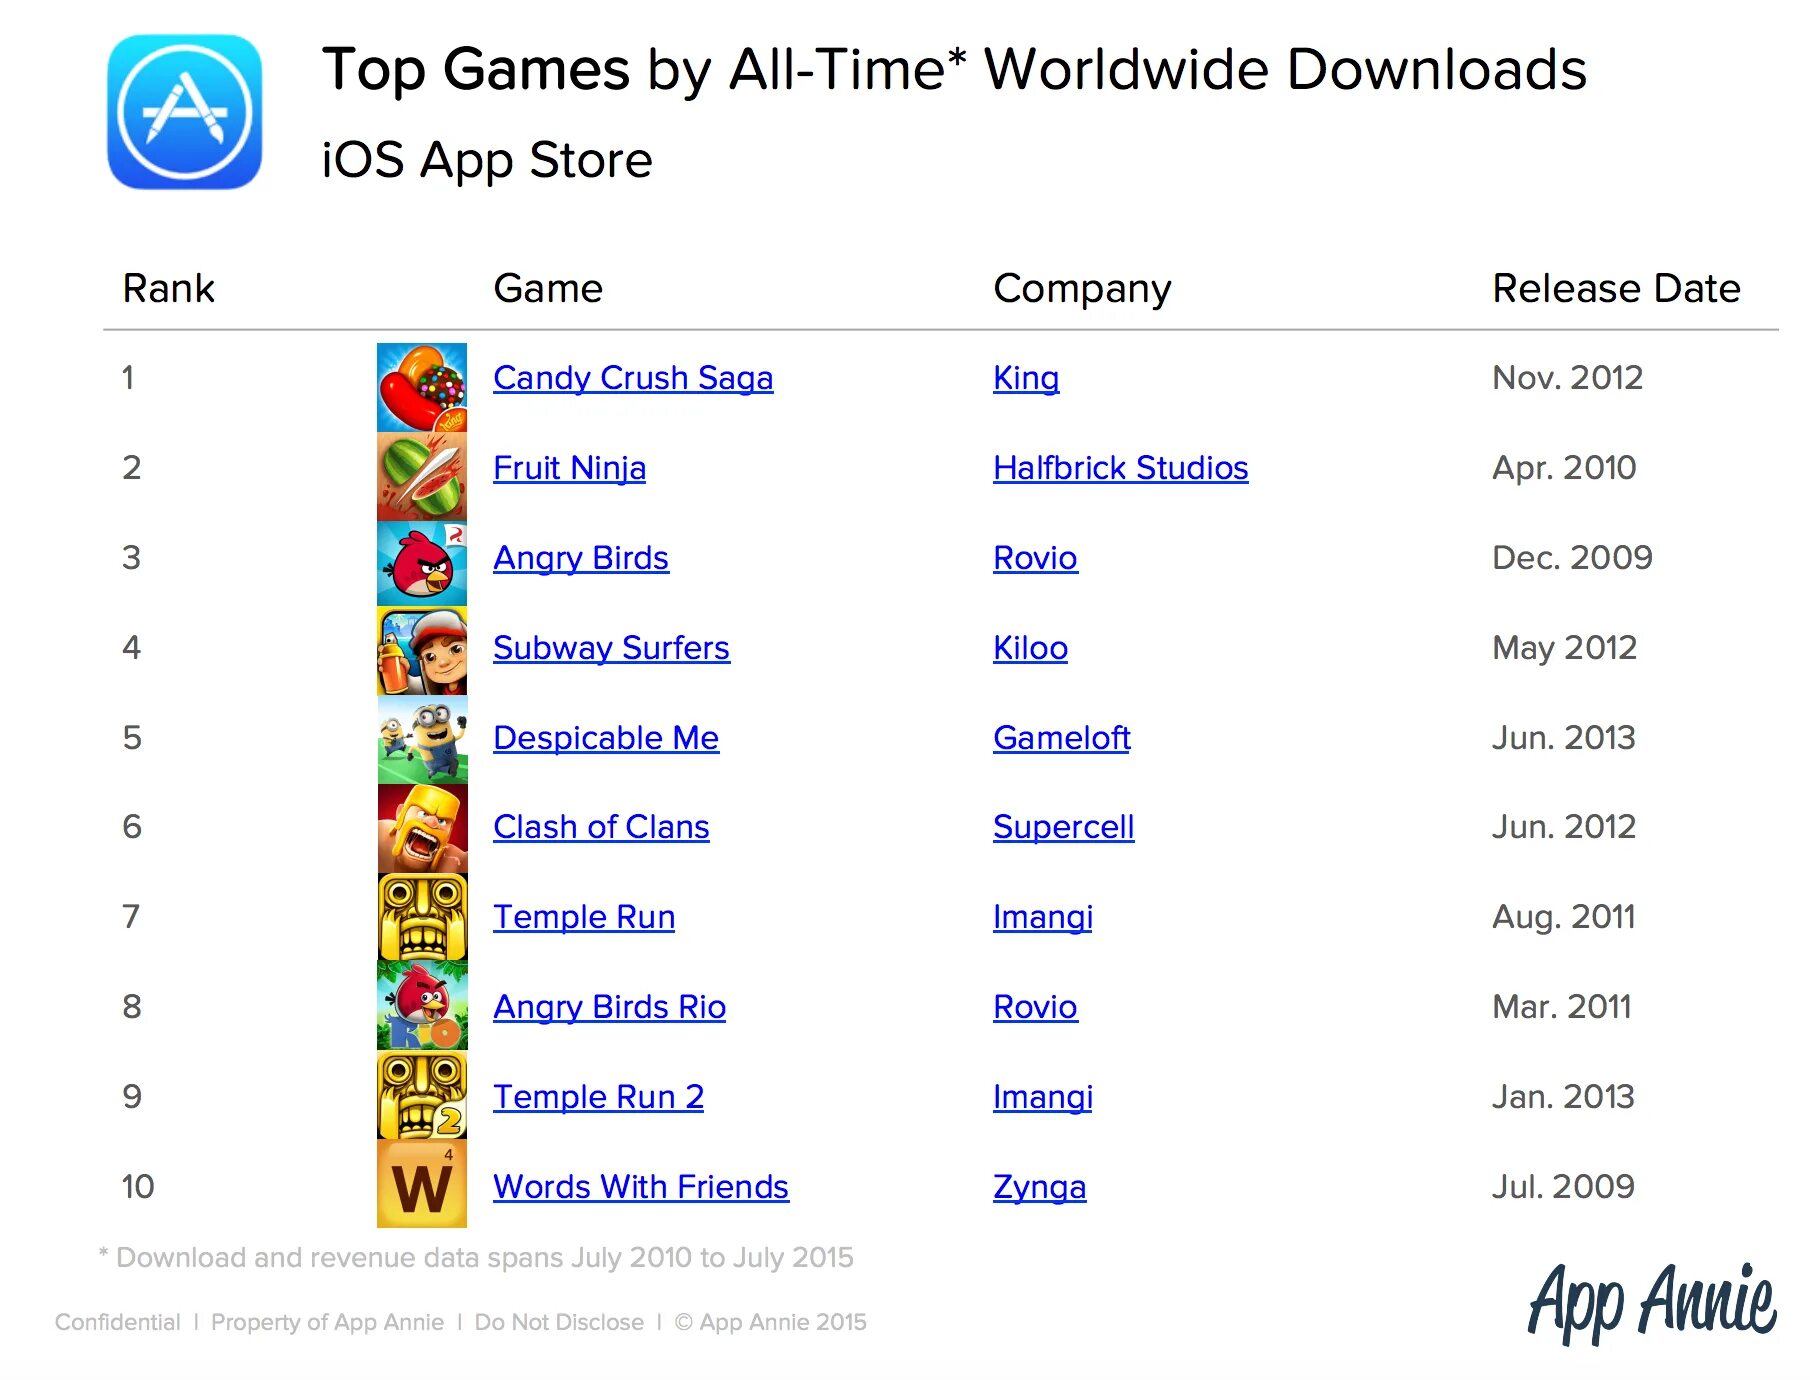 Рейтинг популярности игр. Список самых популярных игр. Популярные игры список. Список самых популярных мобильных игр. Какая игра на 1 месте.